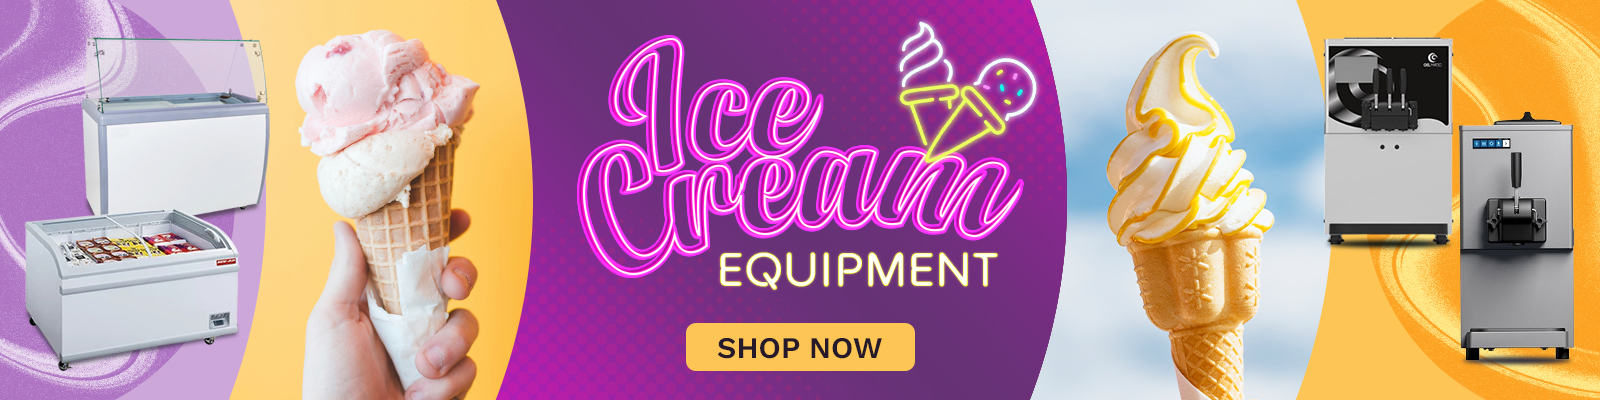 Ice Cream Equipment